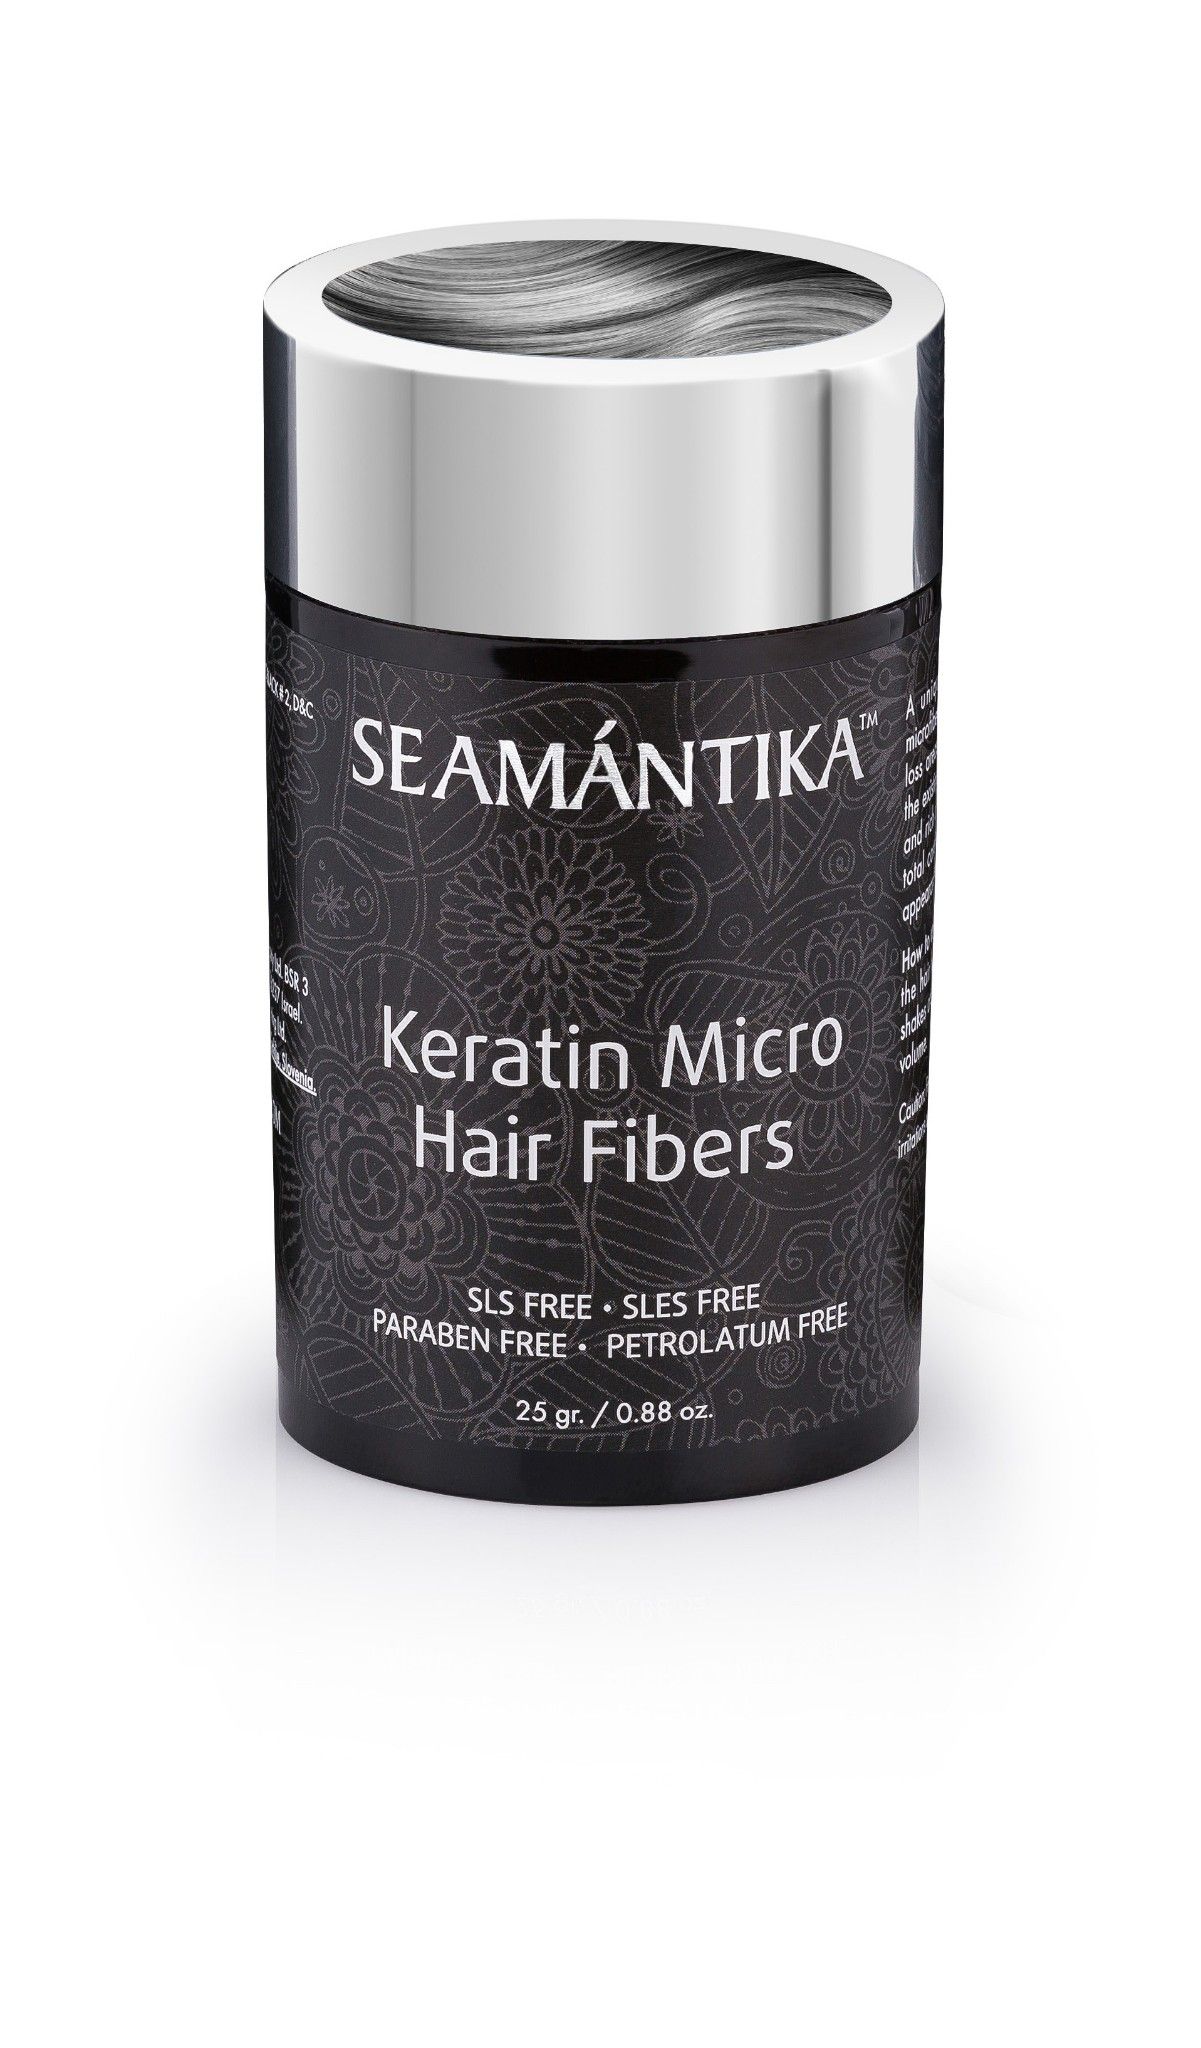  Sợi Keratin Siêu Nhỏ - Tóc Xám - Dành cho mái tóc mỏng - KERATIN MICRO HAIR FIBERS - GRAY 